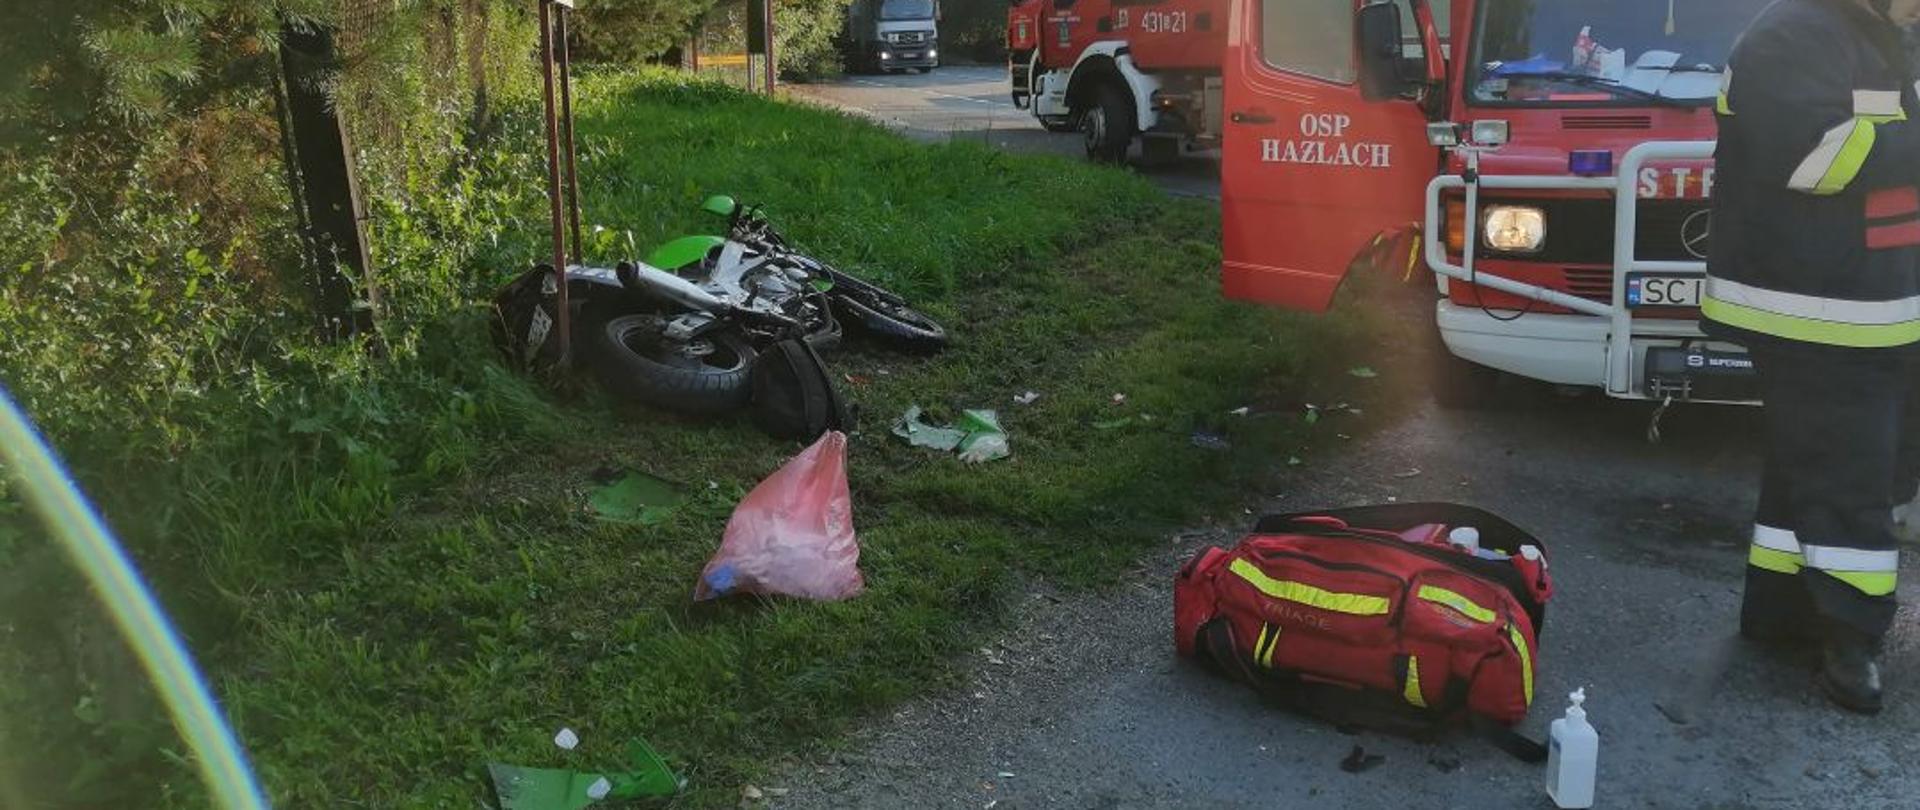 Wypadek motocyklisty z samochodem osobowym w Hażlachu